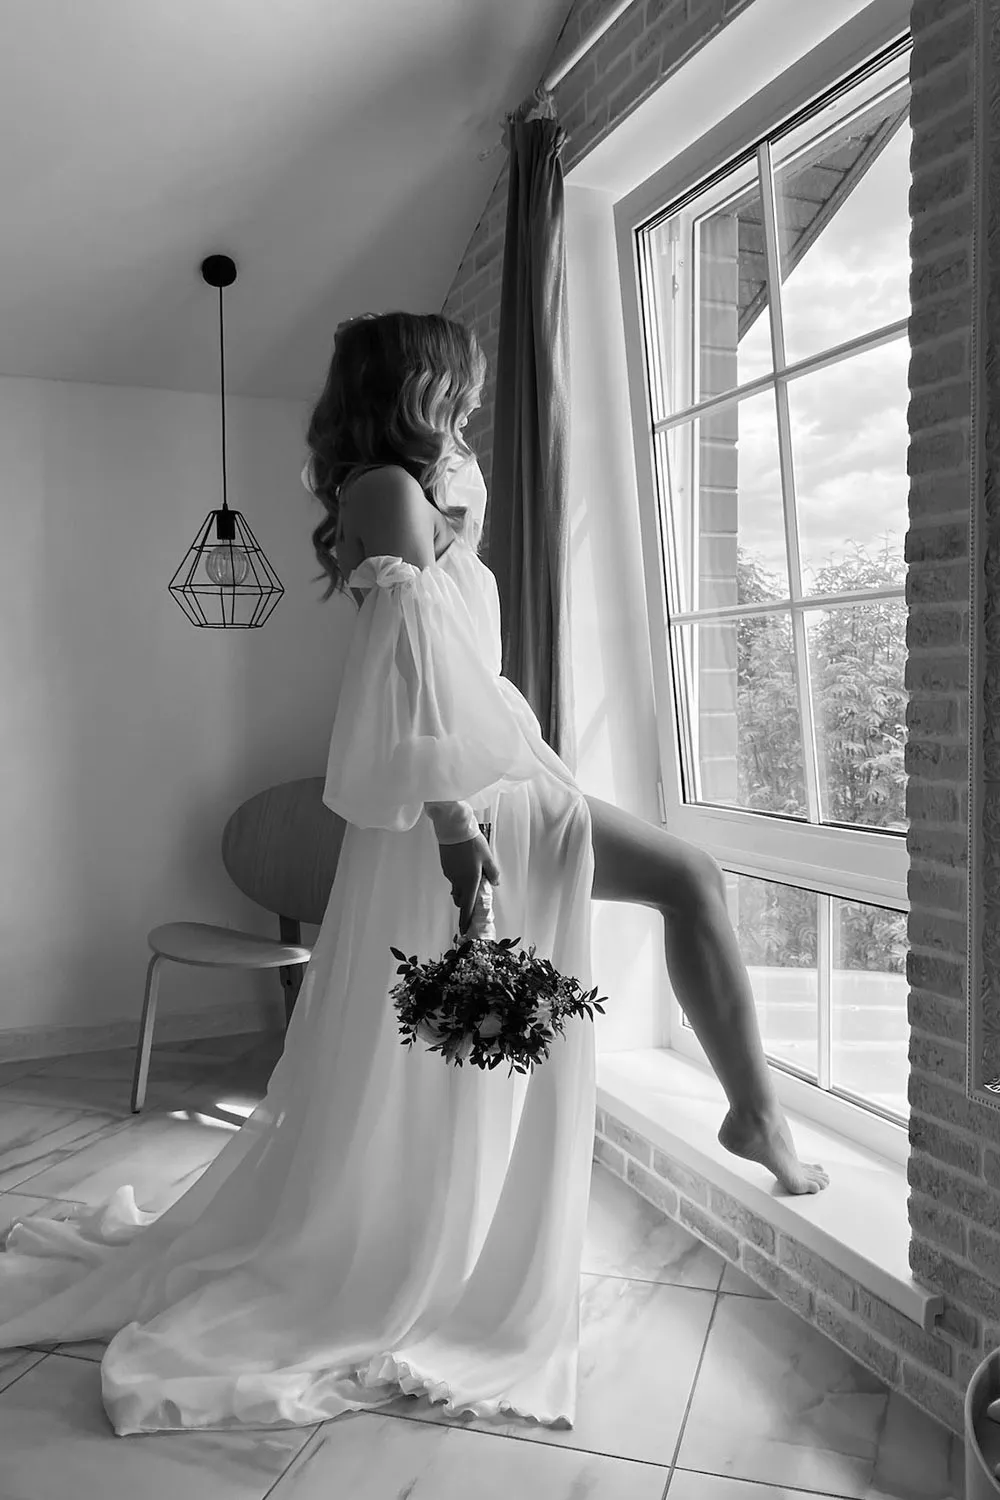 開衩婚紗若隱若現的腿強調了動感，增加魅力及氣勢。